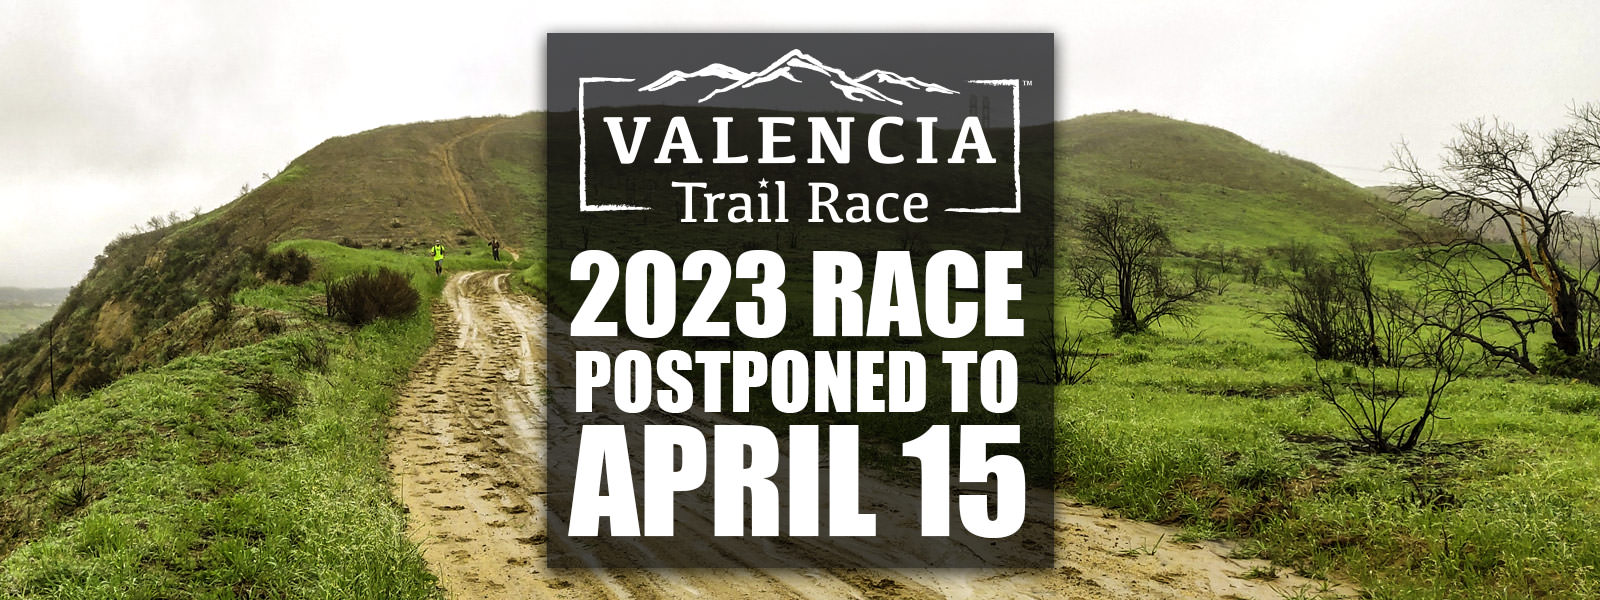 2023 Race Postponed To April 15